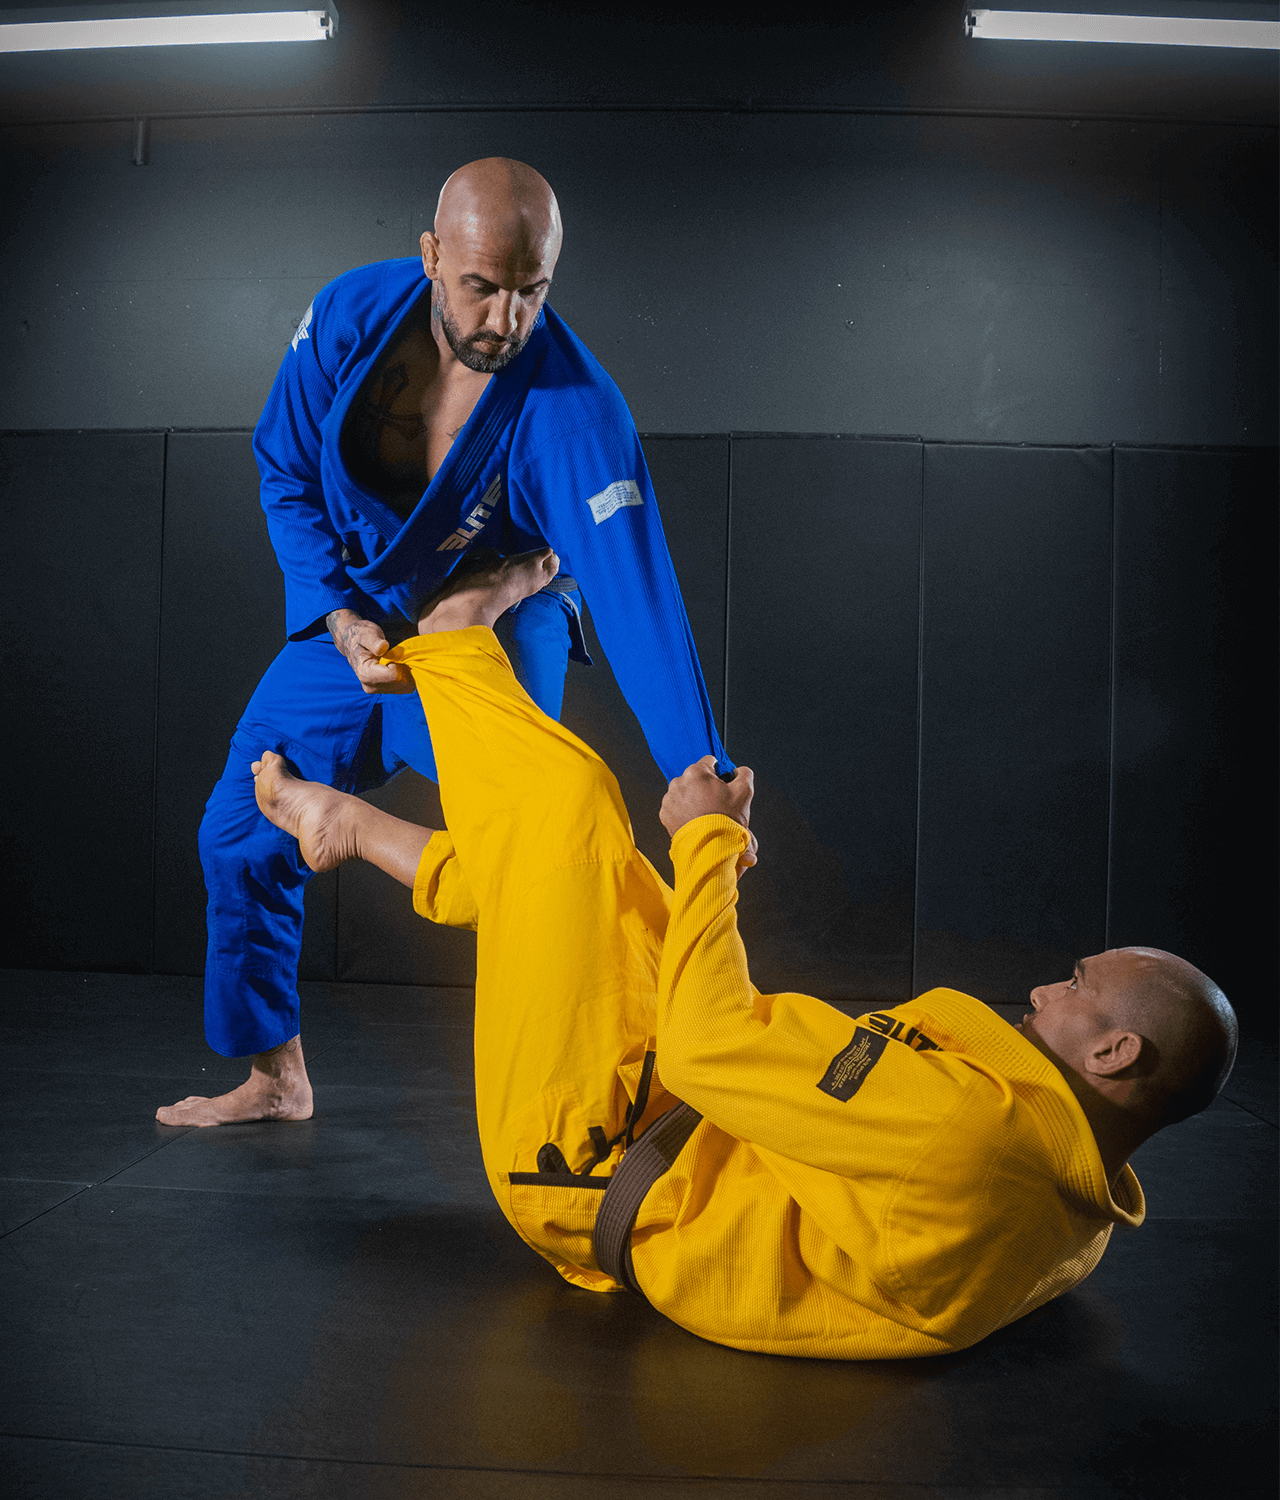 Men's Core Yellow Brazilian Jiu Jitsu BJJ Gi